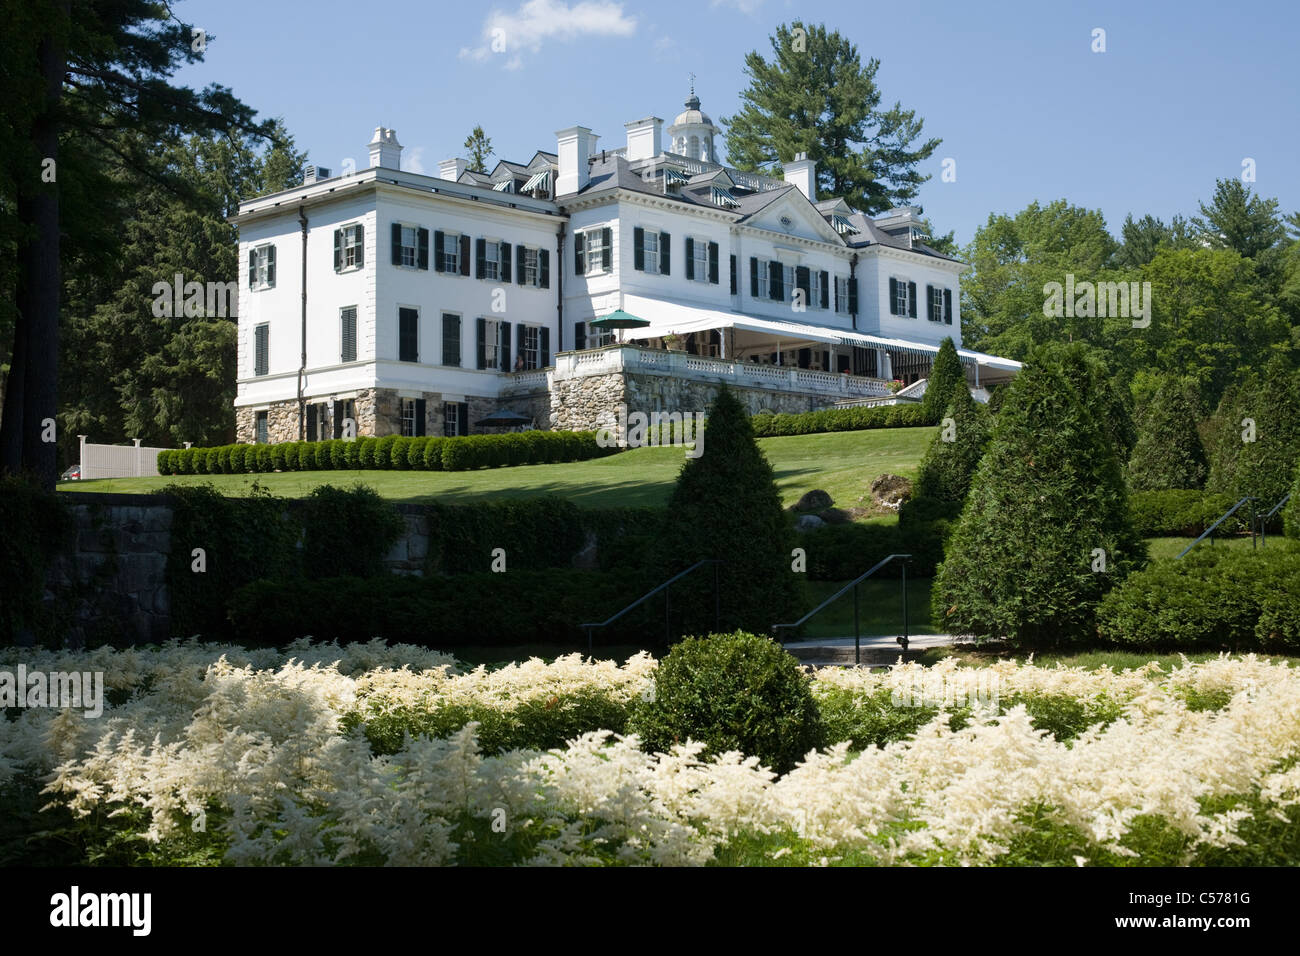 The Mount, Edith Wharton designed mansion, astilbe garden, Lenox, Massachusetts, the Berkshires Stock Photo